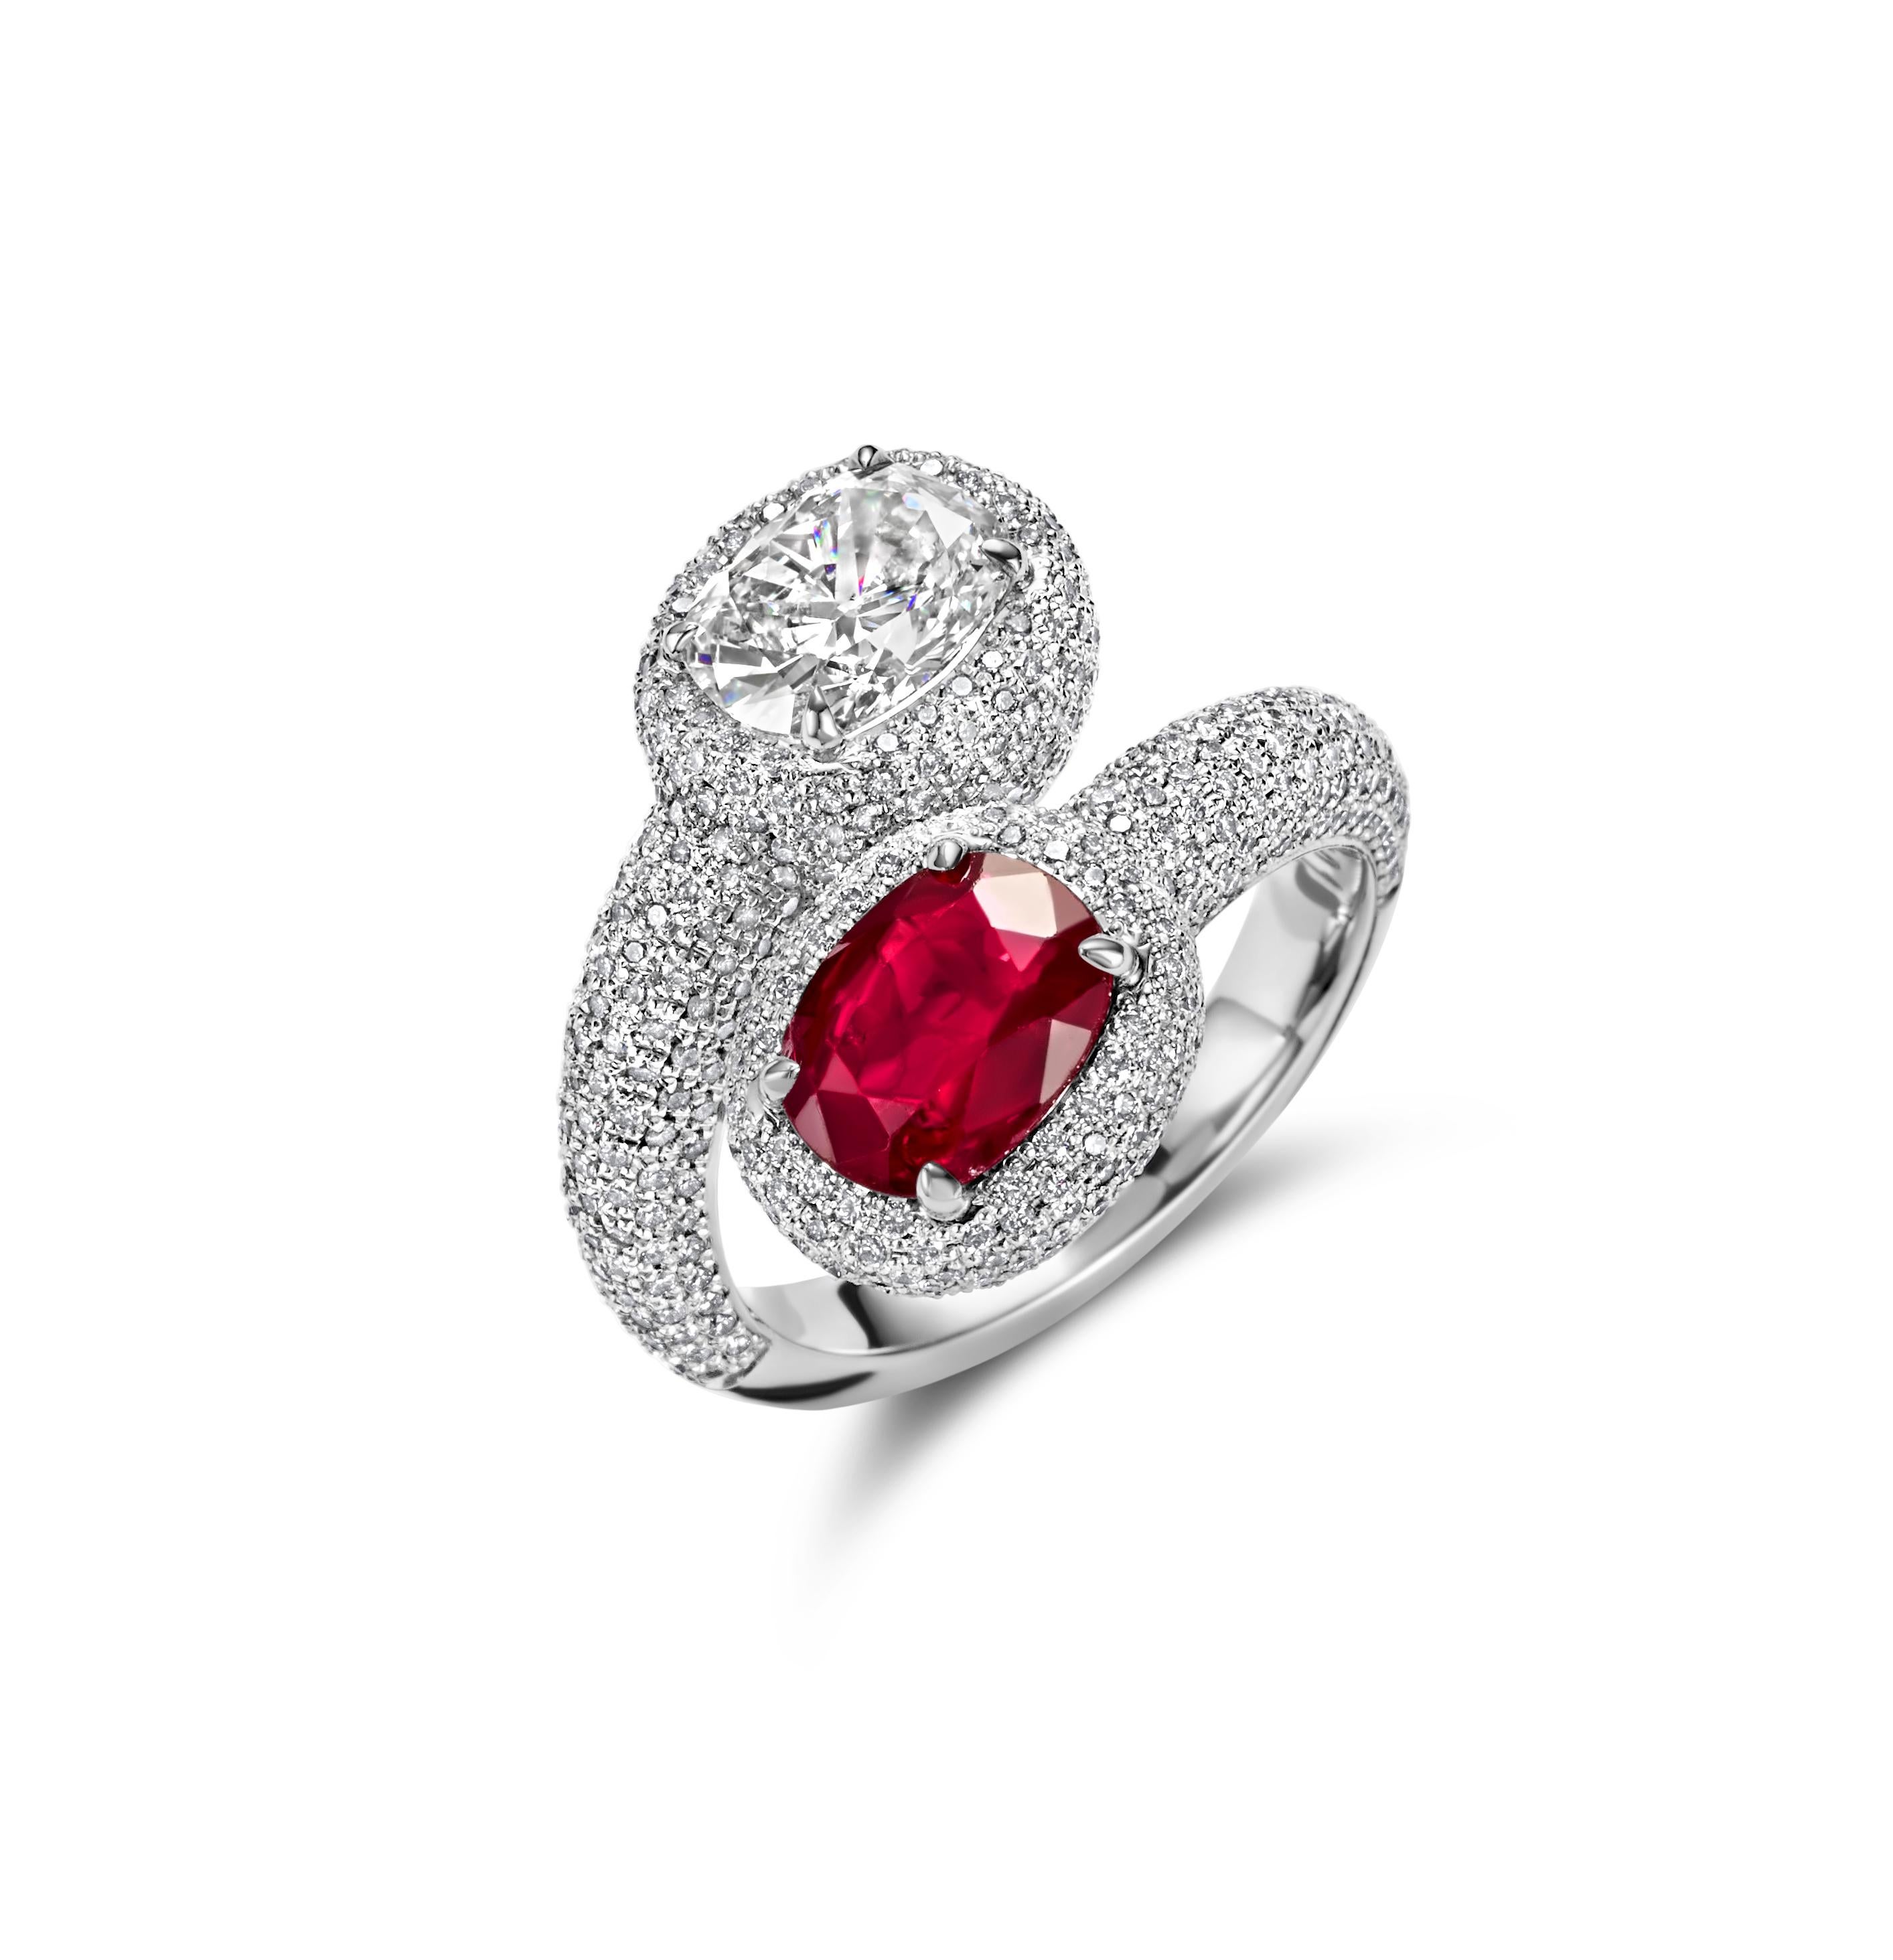 Magnifique bague Toi et Moi en platine avec rubis et diamant

Rubis : Rubis Siam de forme coussin 2.40ct, rouge intense, livré avec un certificat du Carat Gem Lab

Diamants : Diamant de forme coussin 1.55ct G SI1 Livré avec un certificat